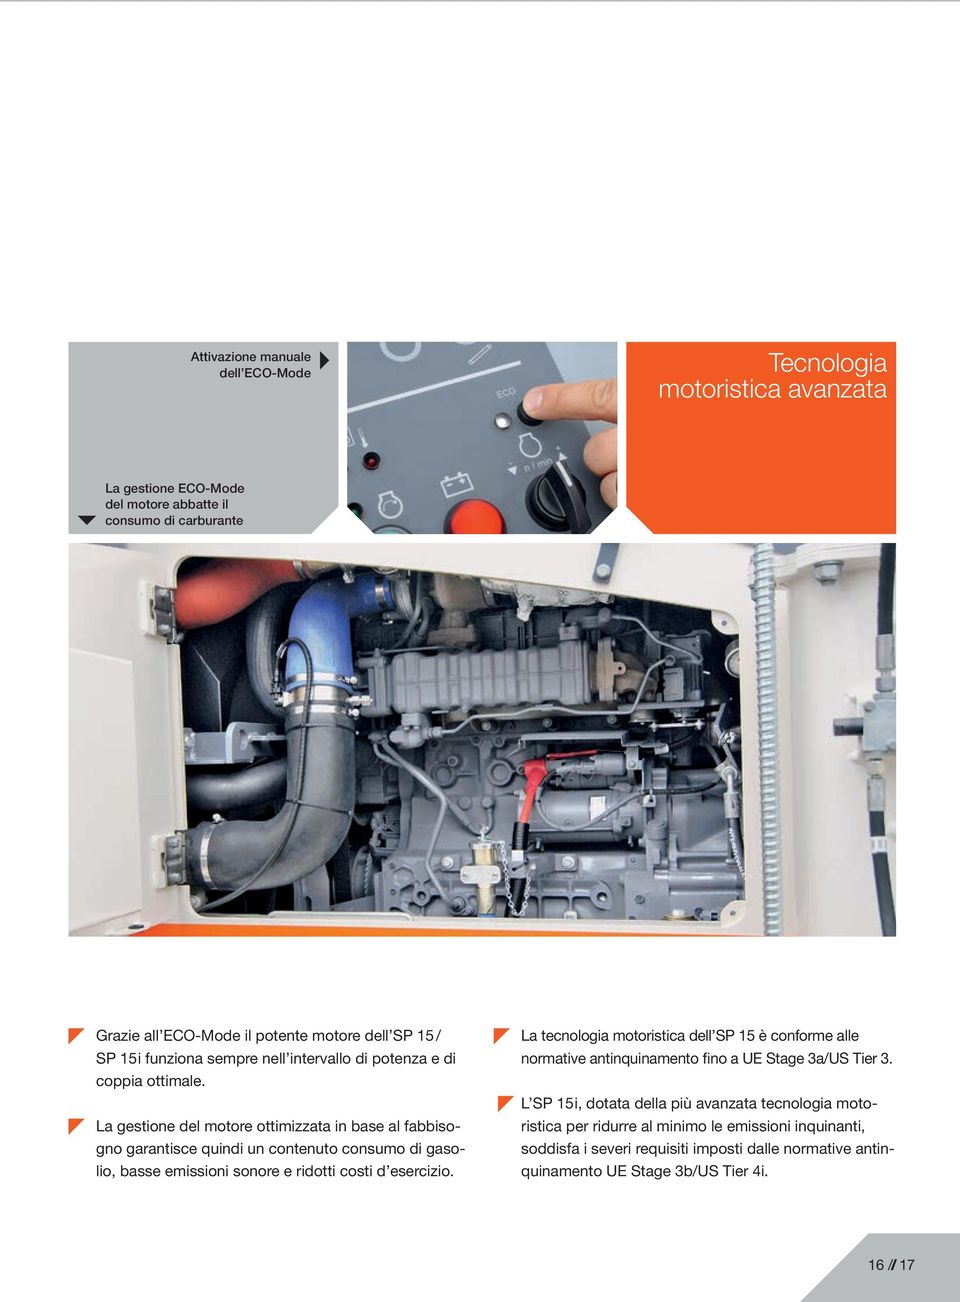 La gestione del motore ottimizzata in base al fabbisogno garantisce quindi un contenuto consumo di gasolio, basse emissioni sonore e ridotti costi d esercizio.